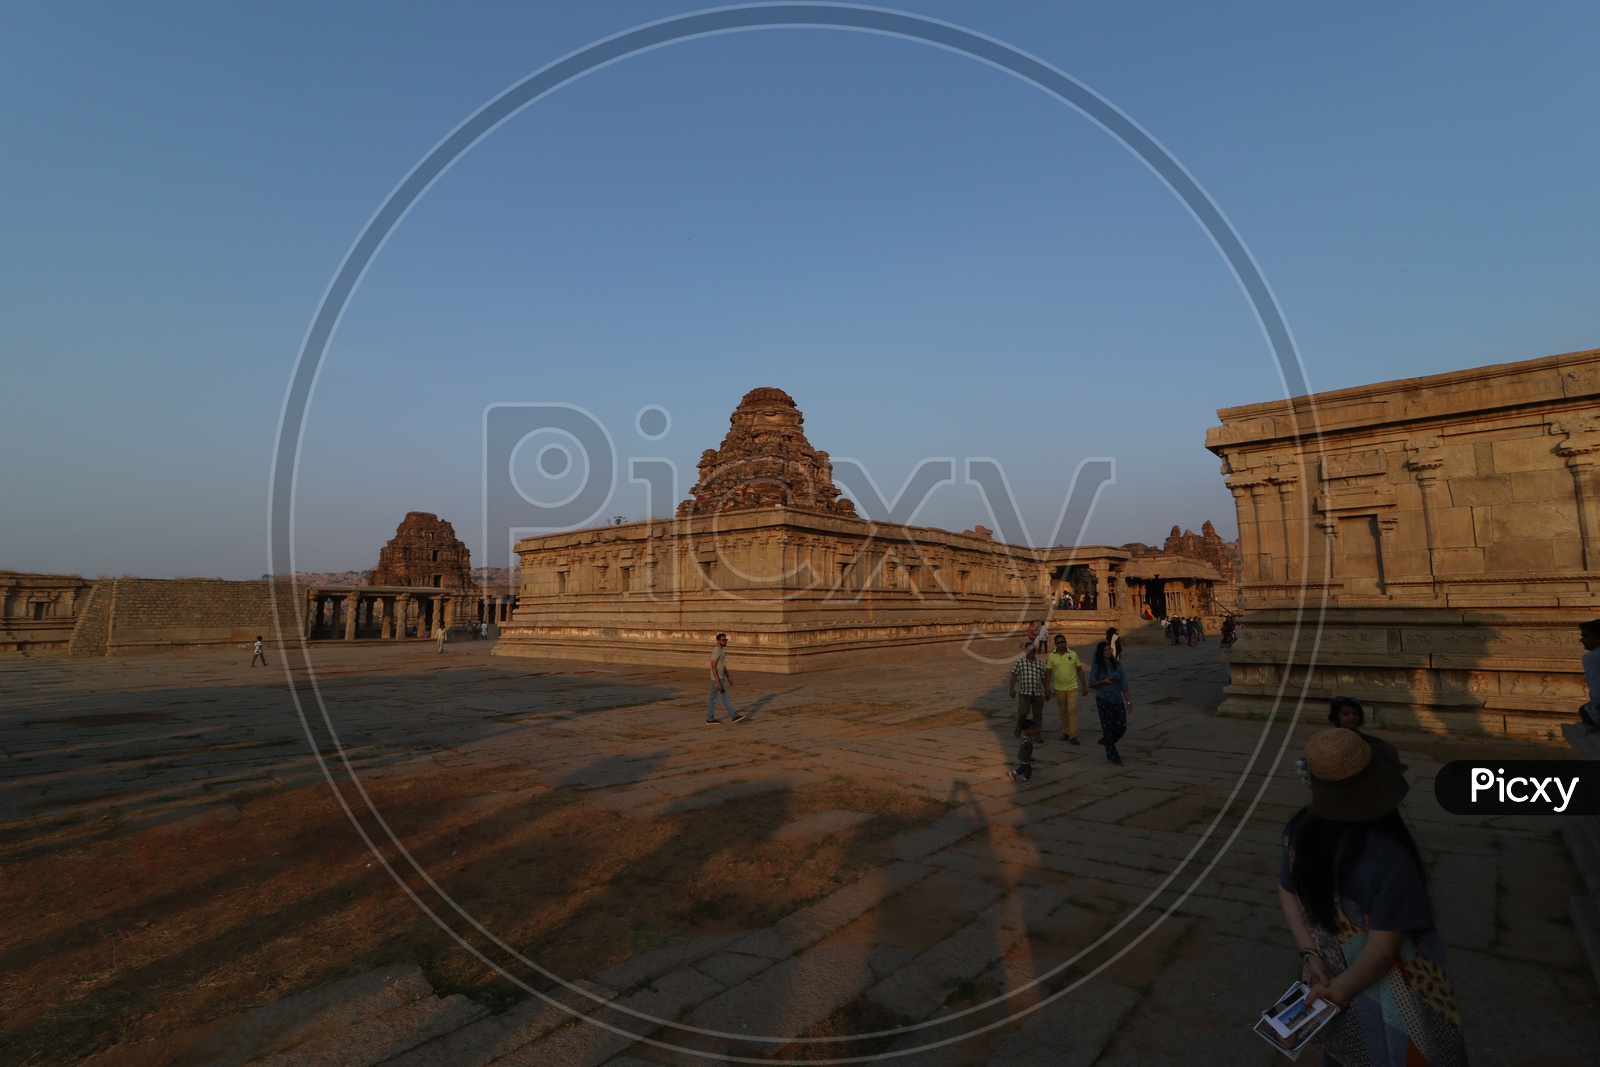 Tourists / Visitors At an  Old Ancient Dravidian Vitthala Temple in Hampi , Karnataka